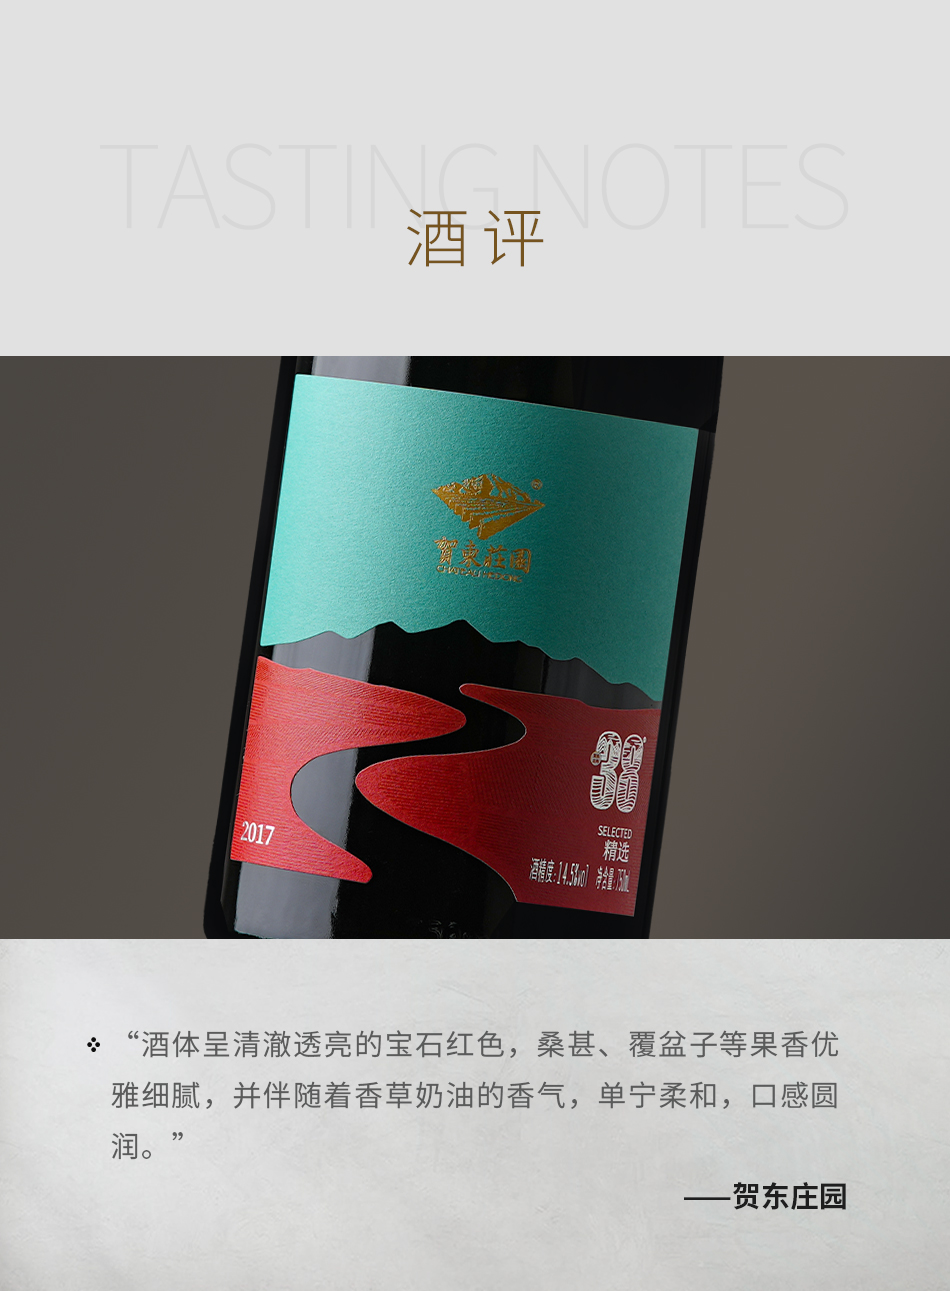 2017年贺东庄园北纬38°精选干红葡萄酒